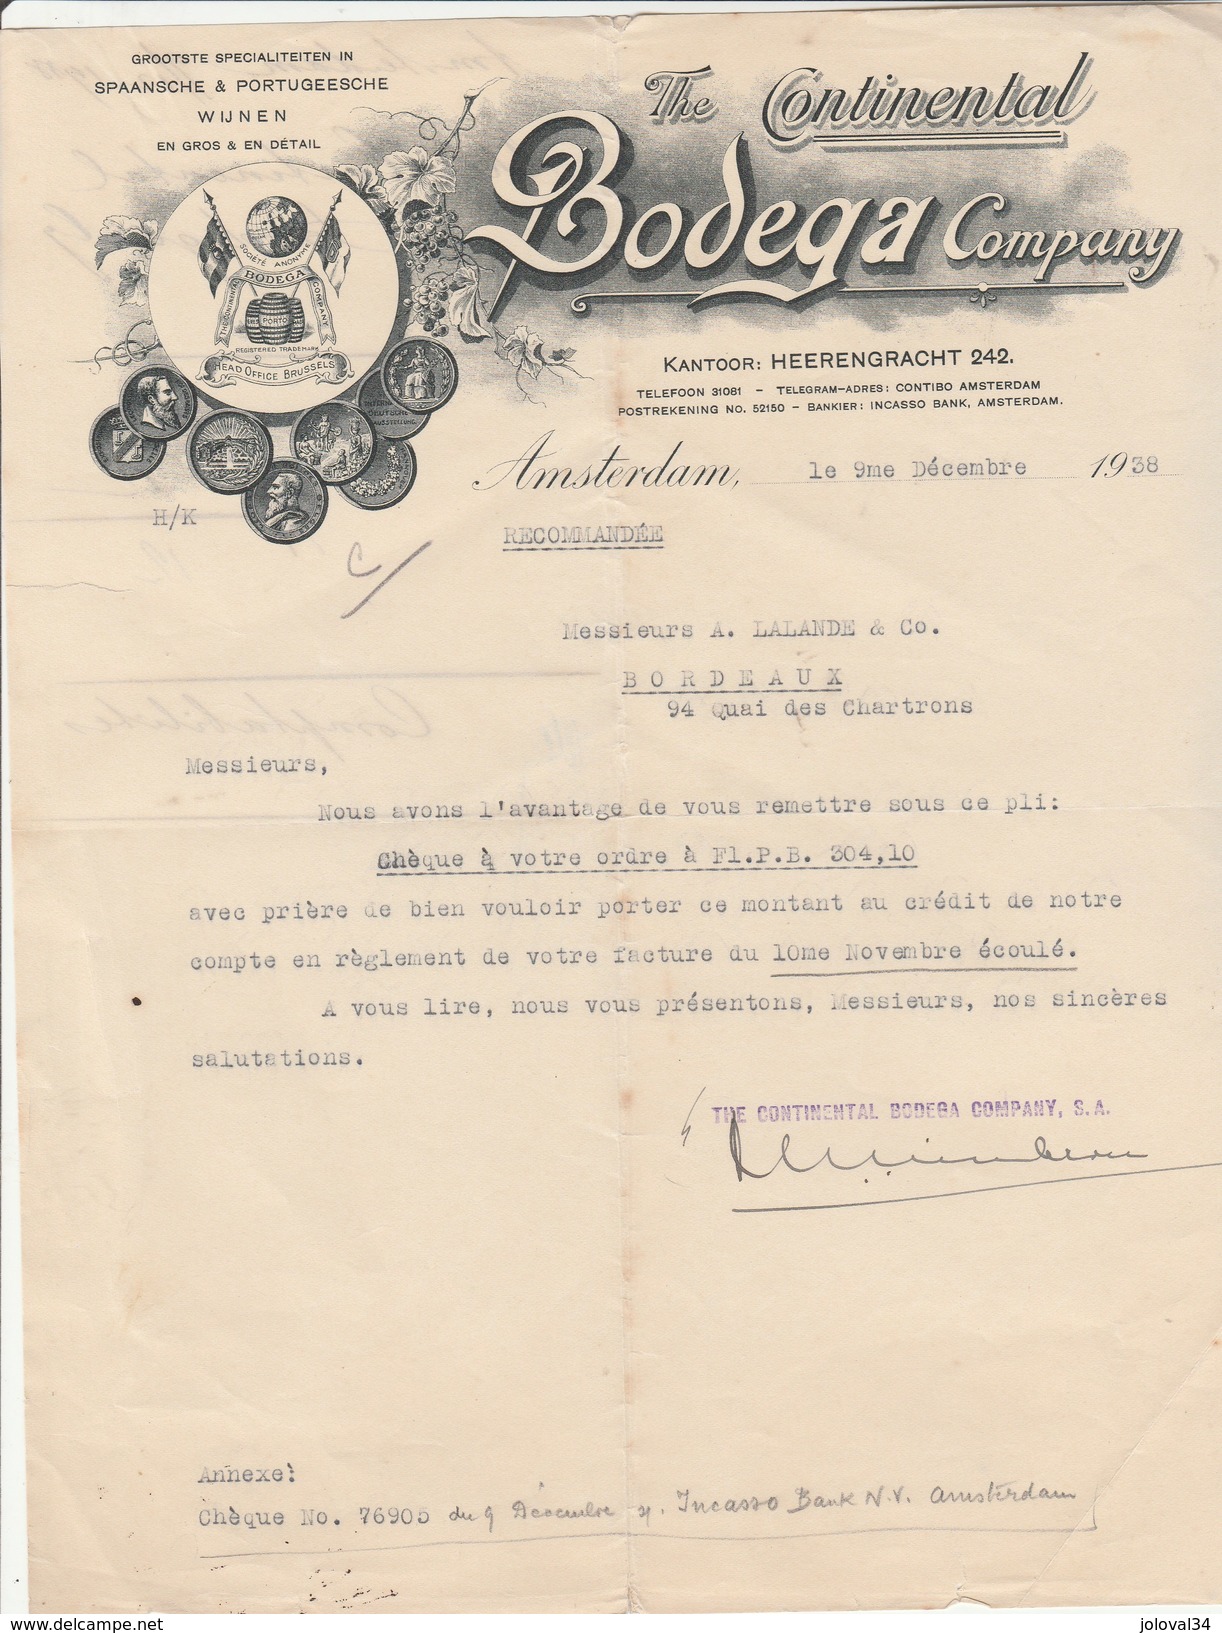 Lettre Illustrée 9/12/1938 The Continental BODEGA Company AMSTERDAM Pays Bas - Vin Espagnol Et Portugais - Netherlands